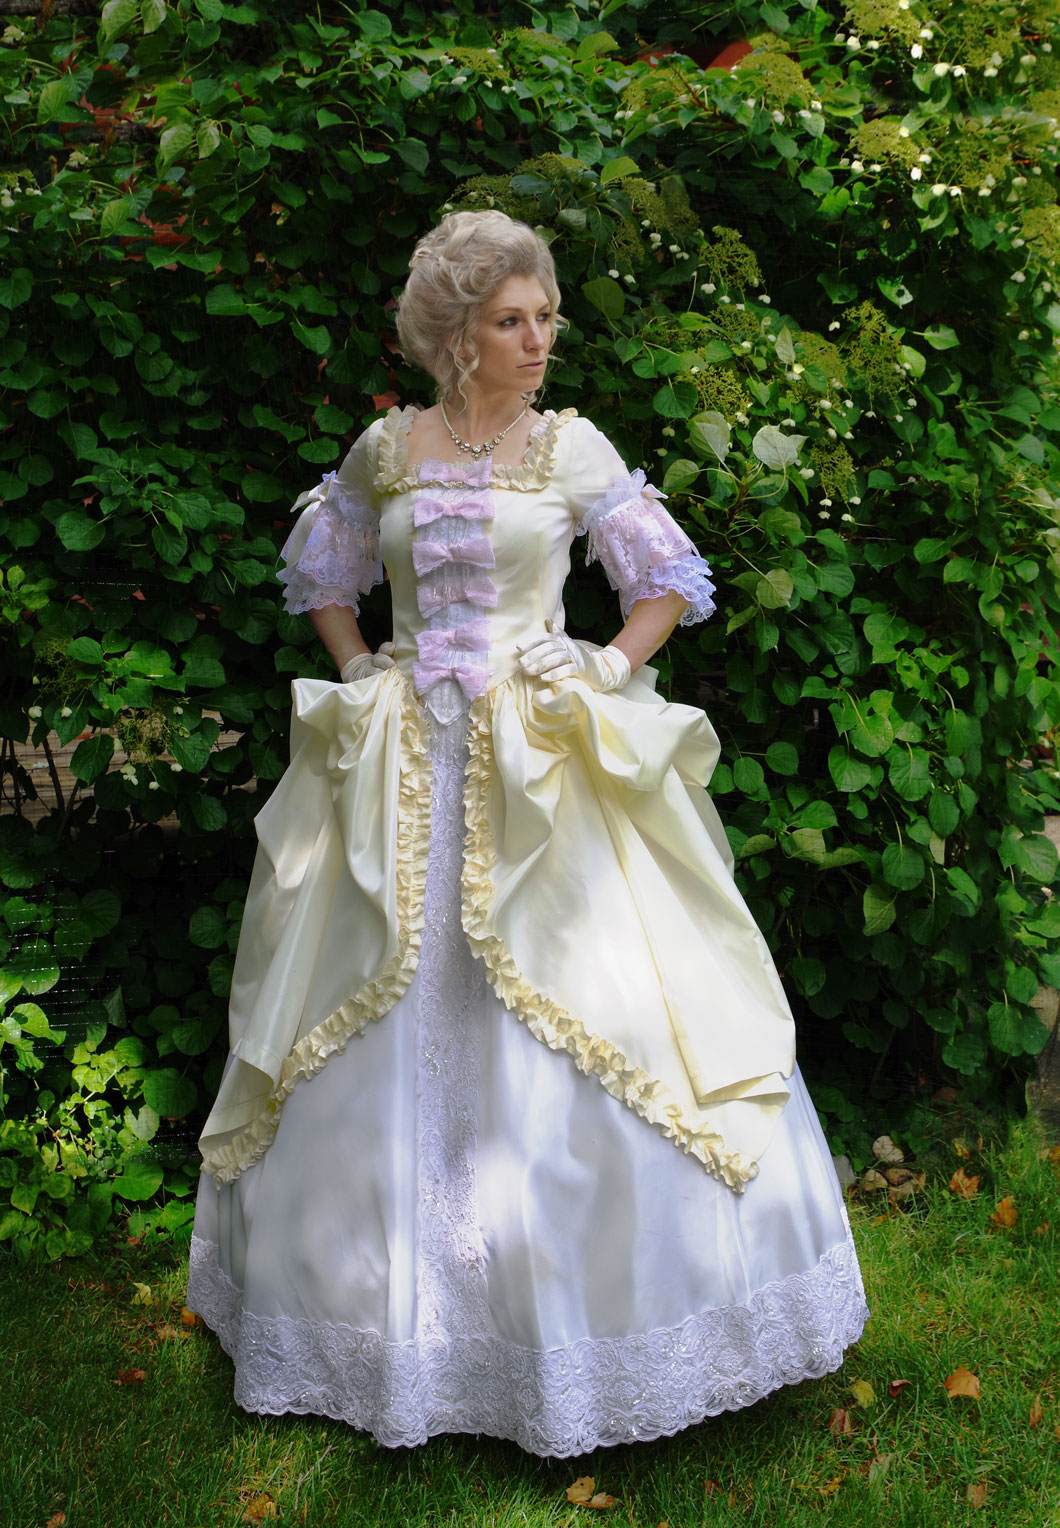 Marie Antoinette Revolutionary Ball Gown